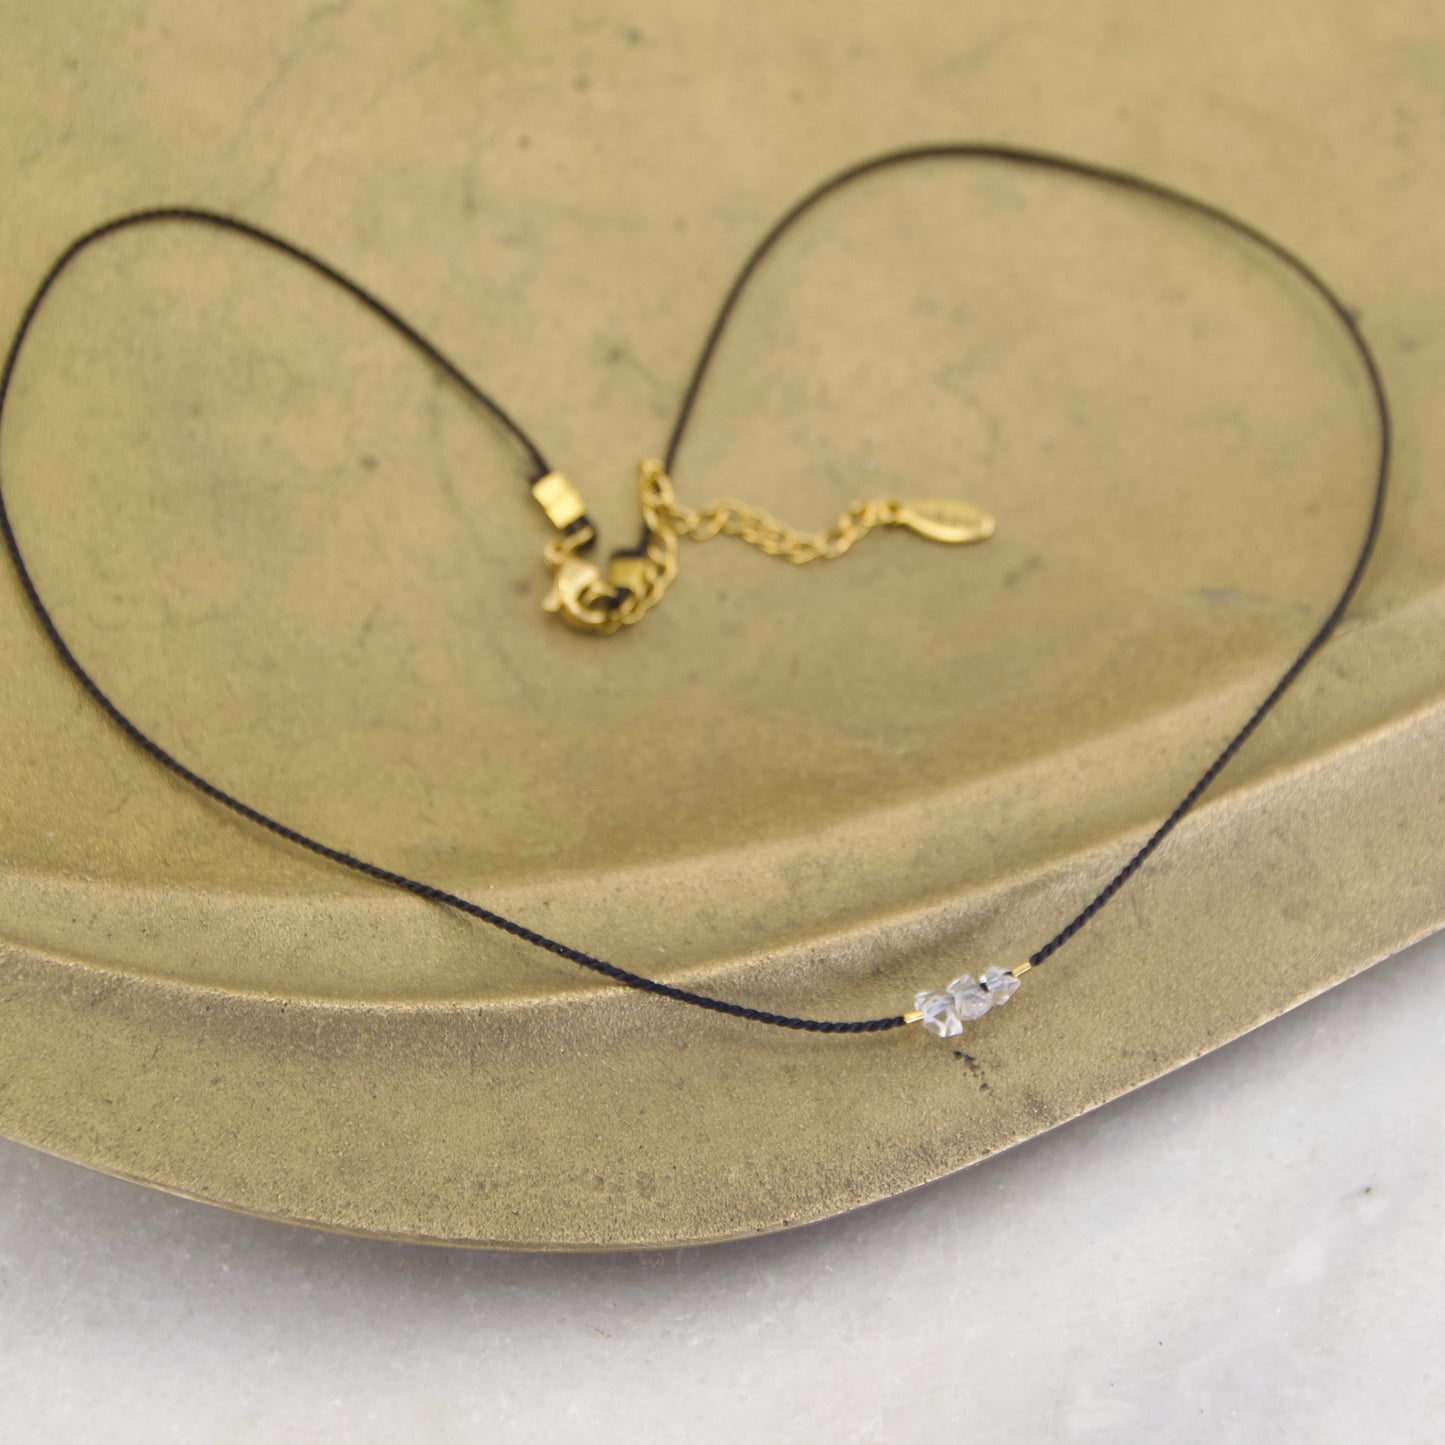 Golden Age Birthstone Thread Necklace